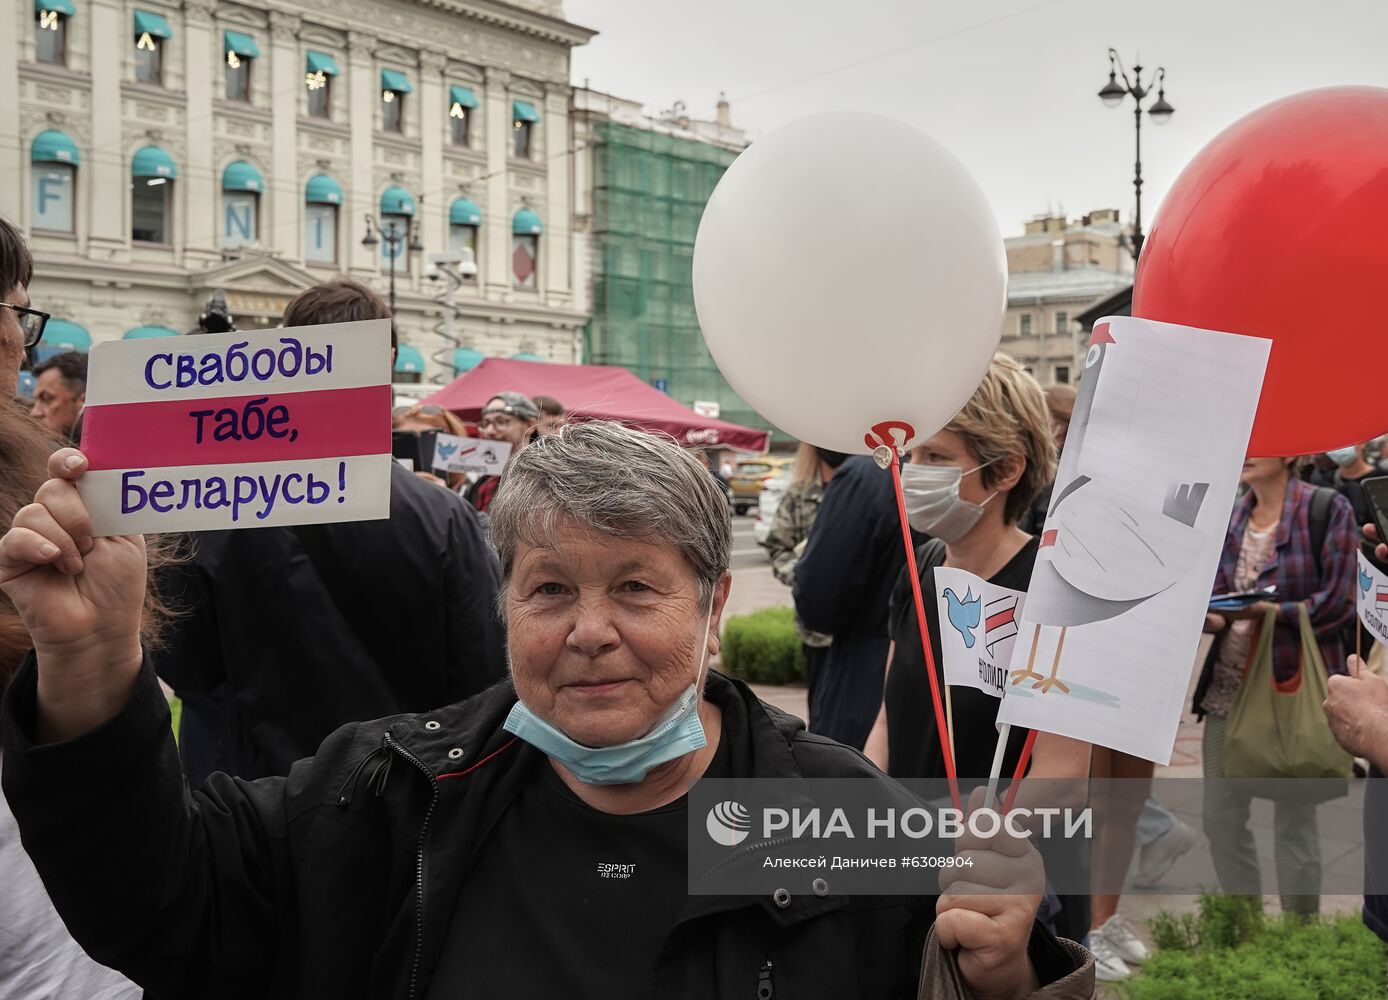 Акция солидарности с жителями Белоруссии прошла в Санкт-Петербурге